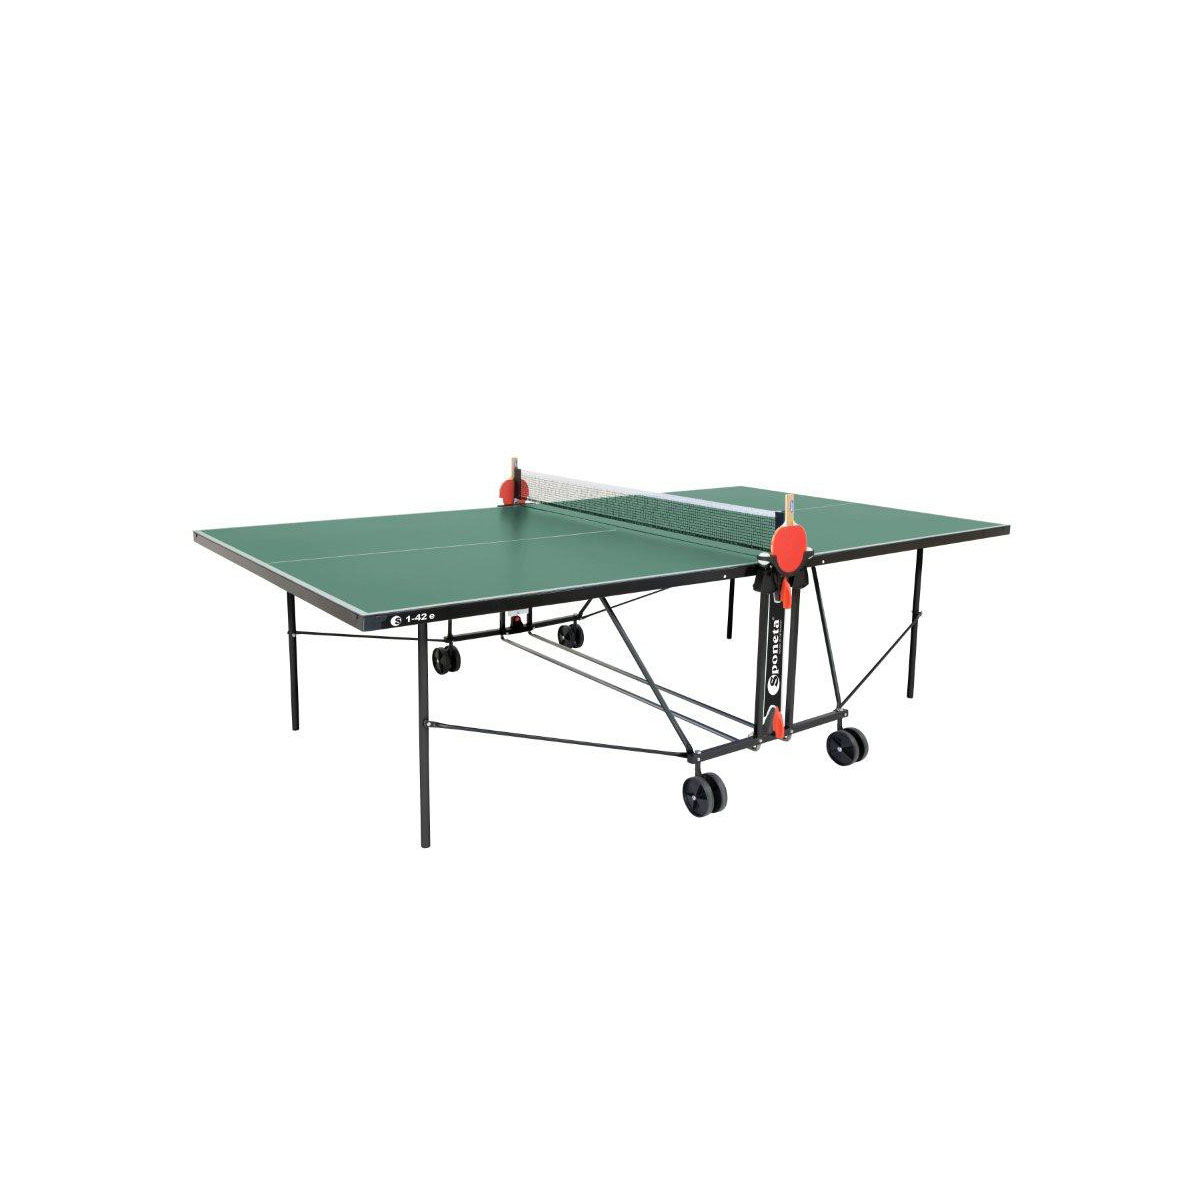 Tischtennisplatte S 1-42 e Grün Outdoor Tischtennis Tisch wetterfest Grün K000779969